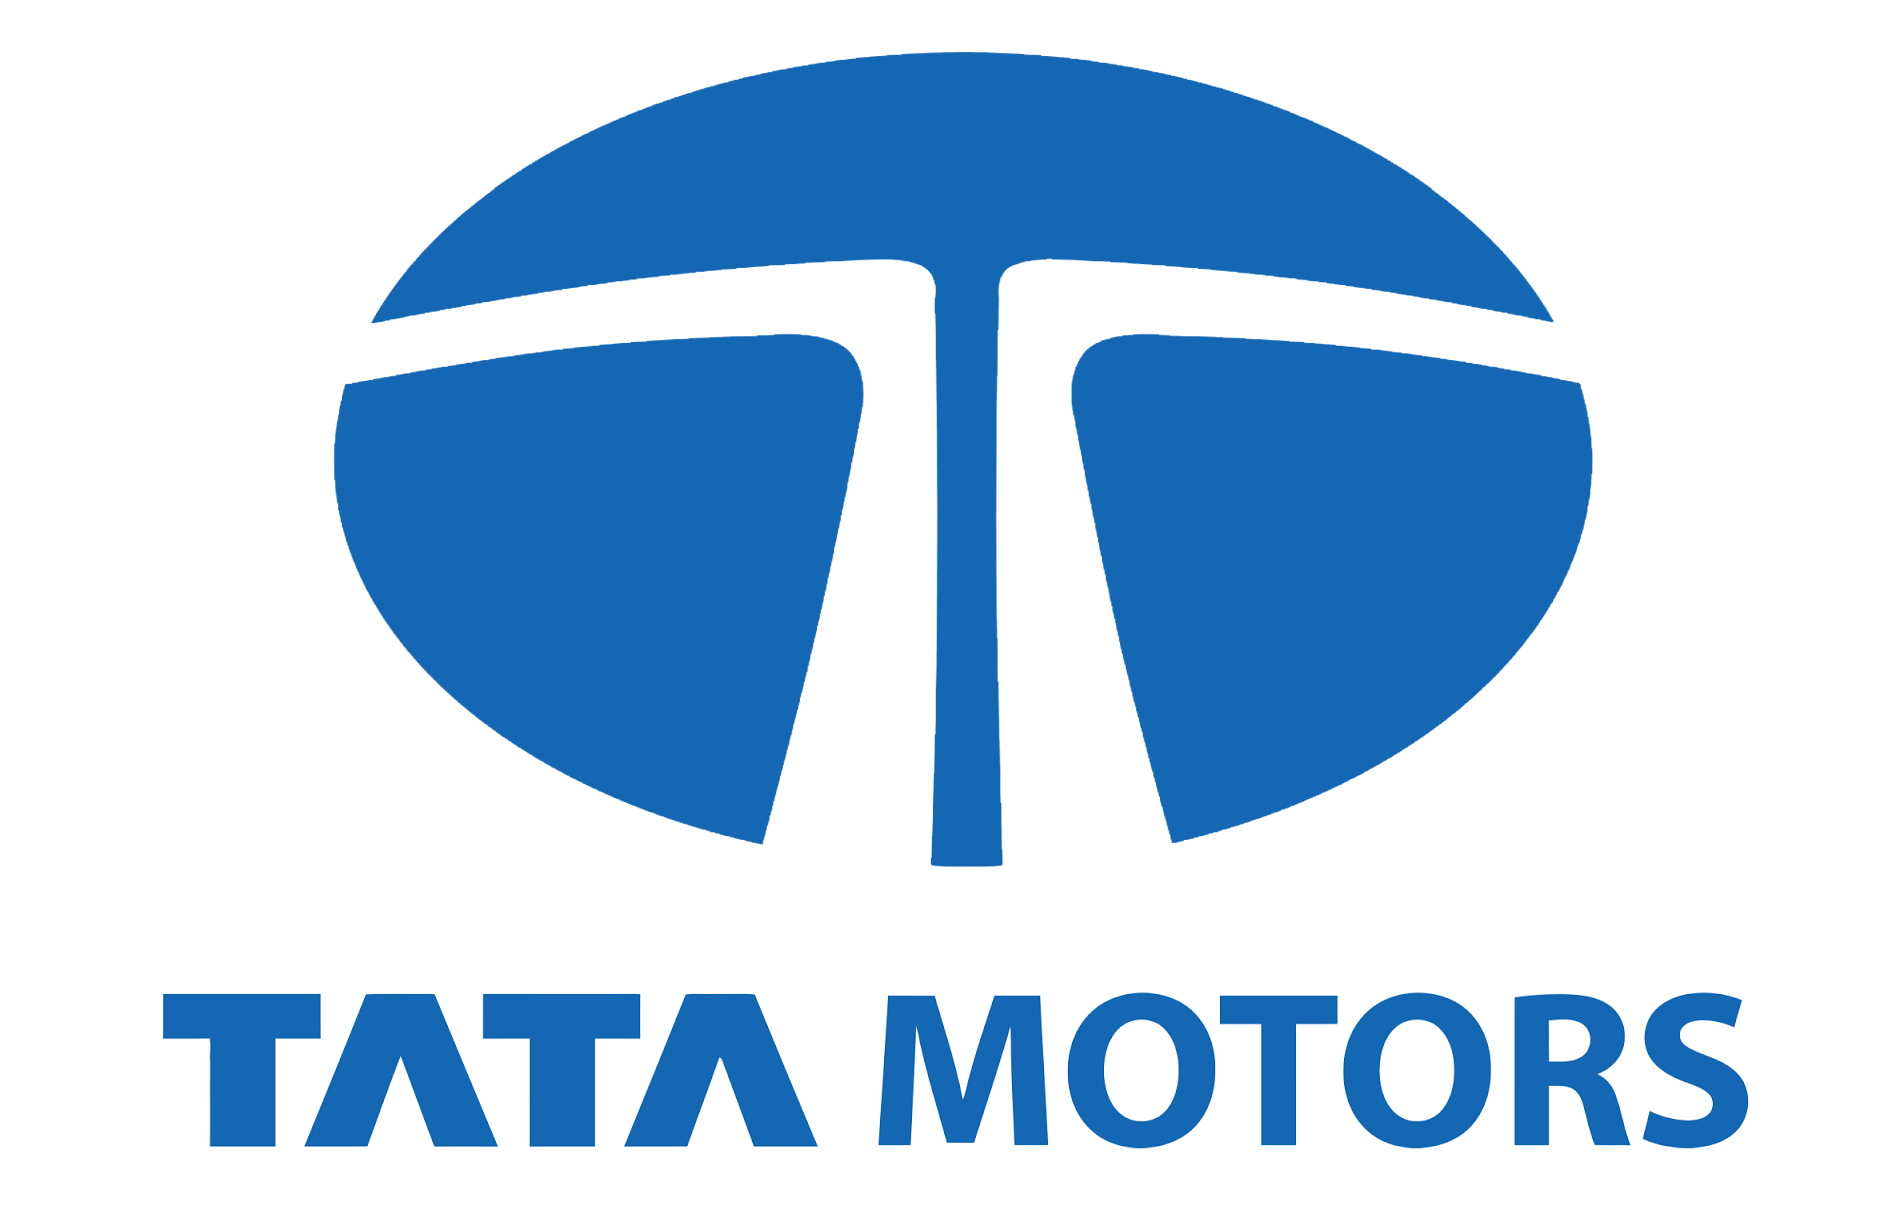 Tata Motors Cars Showroom - Trident Motors|Show Room|Automotive